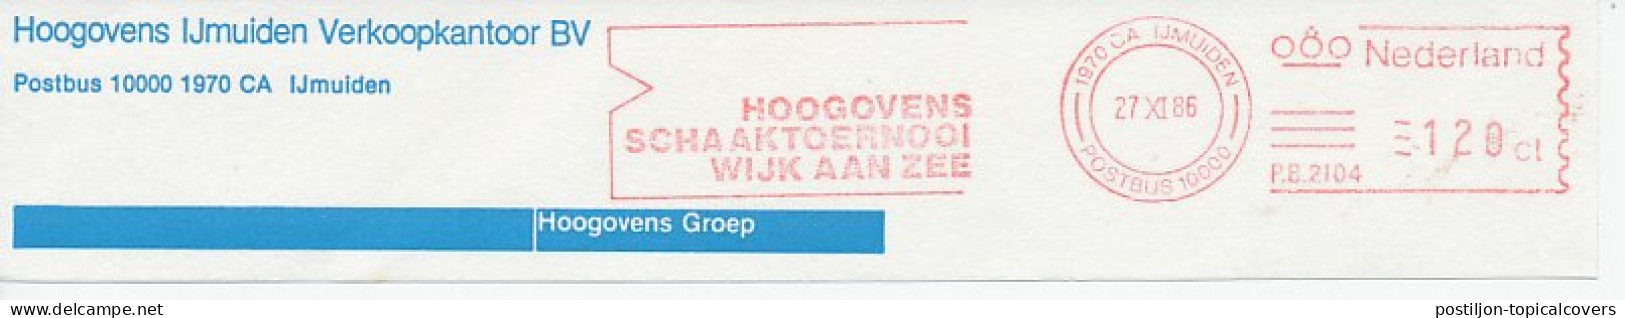 Meter Top Cut Netherlands 1986 Hoogovens Chess Tournament - Wijk Aan Zee - Sin Clasificación